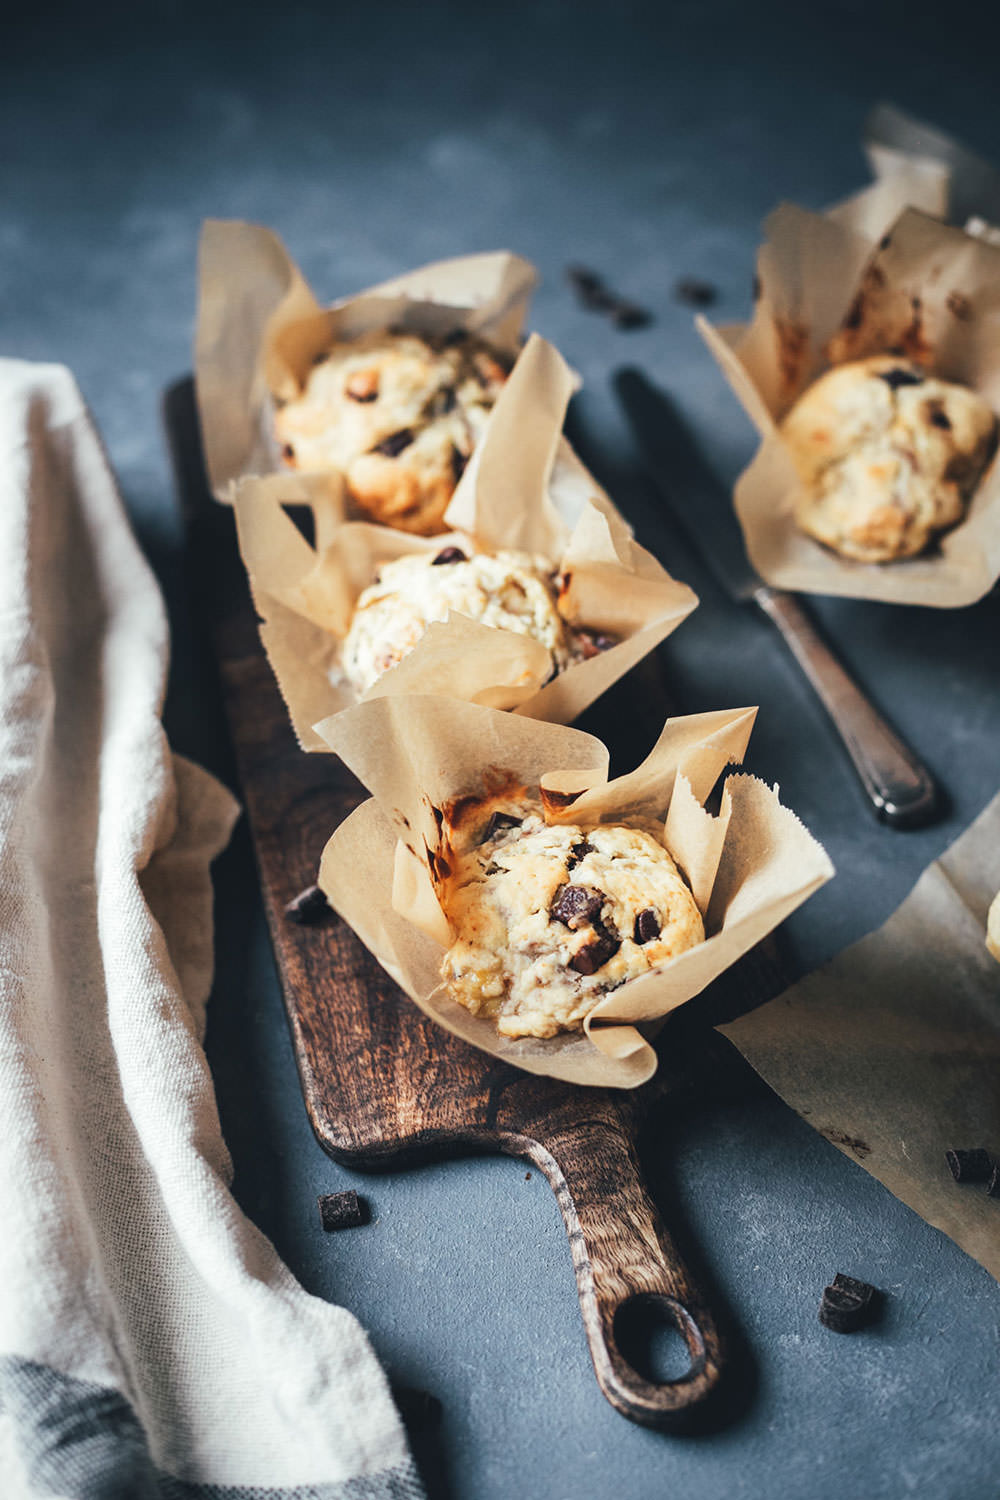 Rezept für saftige Bananen-Muffins mit Walnusskernen und Schokoladen-Stückchen | moeyskitchen.com #rezepte #foodblogger #backen #muffins #bananenmuffins #schokomuffins #muffinsbacken